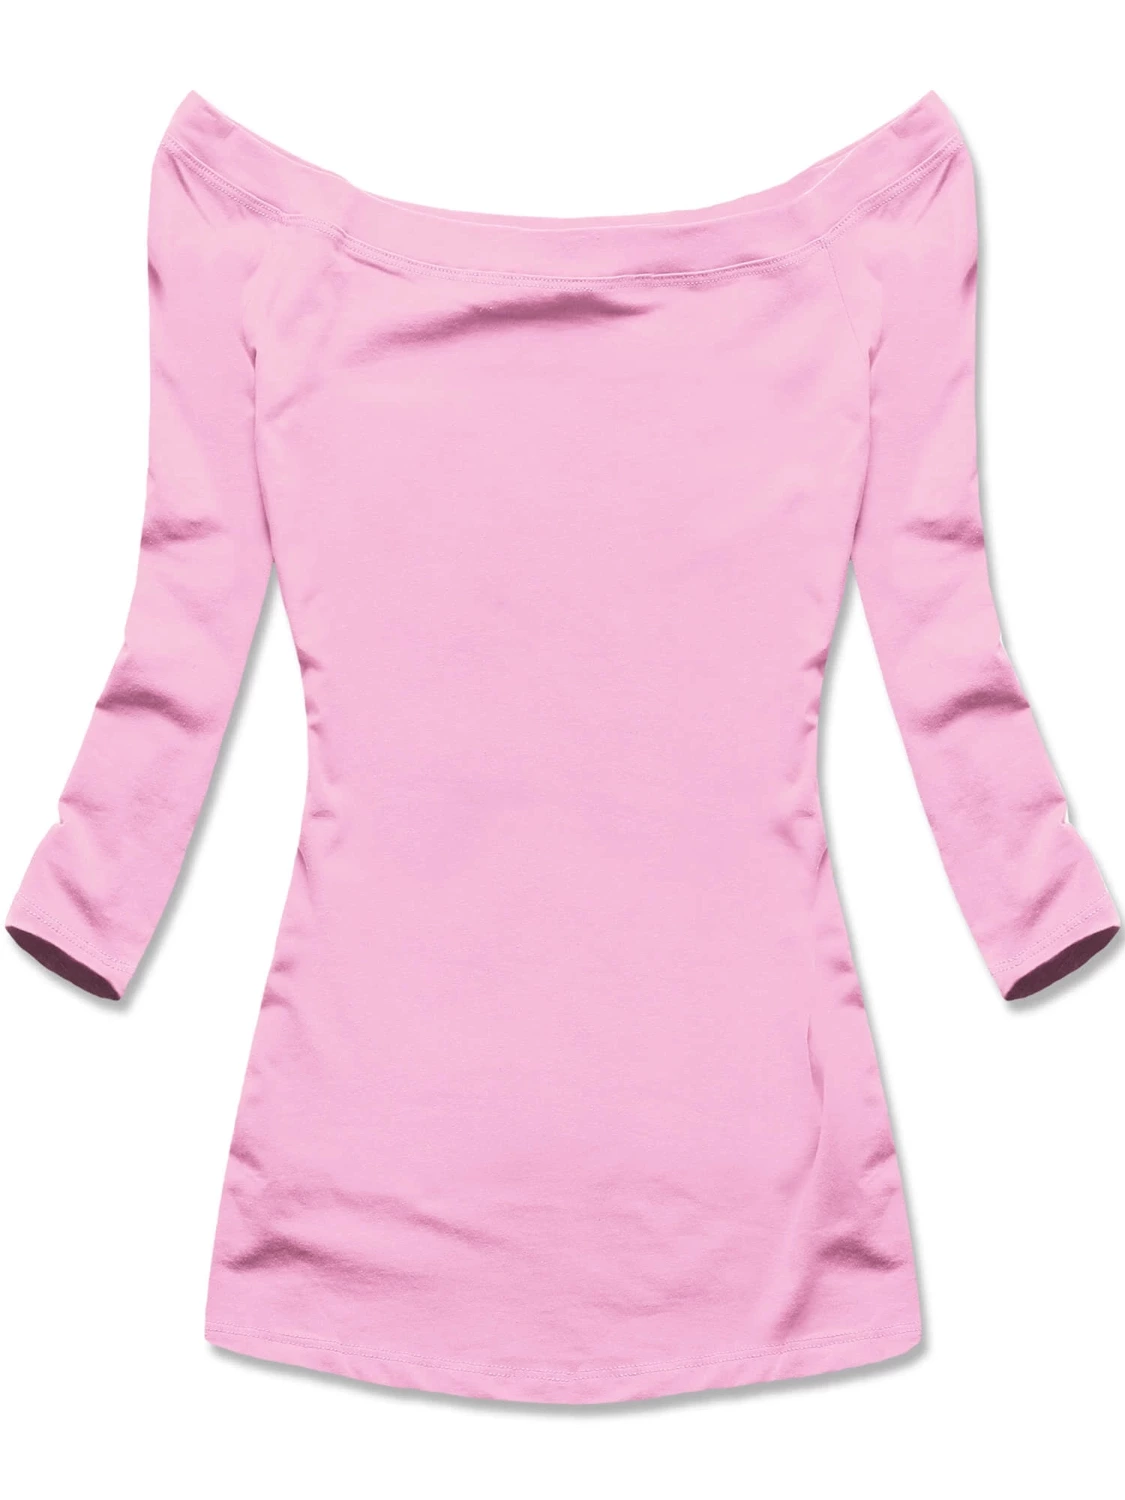 Różowa klasyczna bluzka z dekoltem w łódkę, elegancka i elastyczna